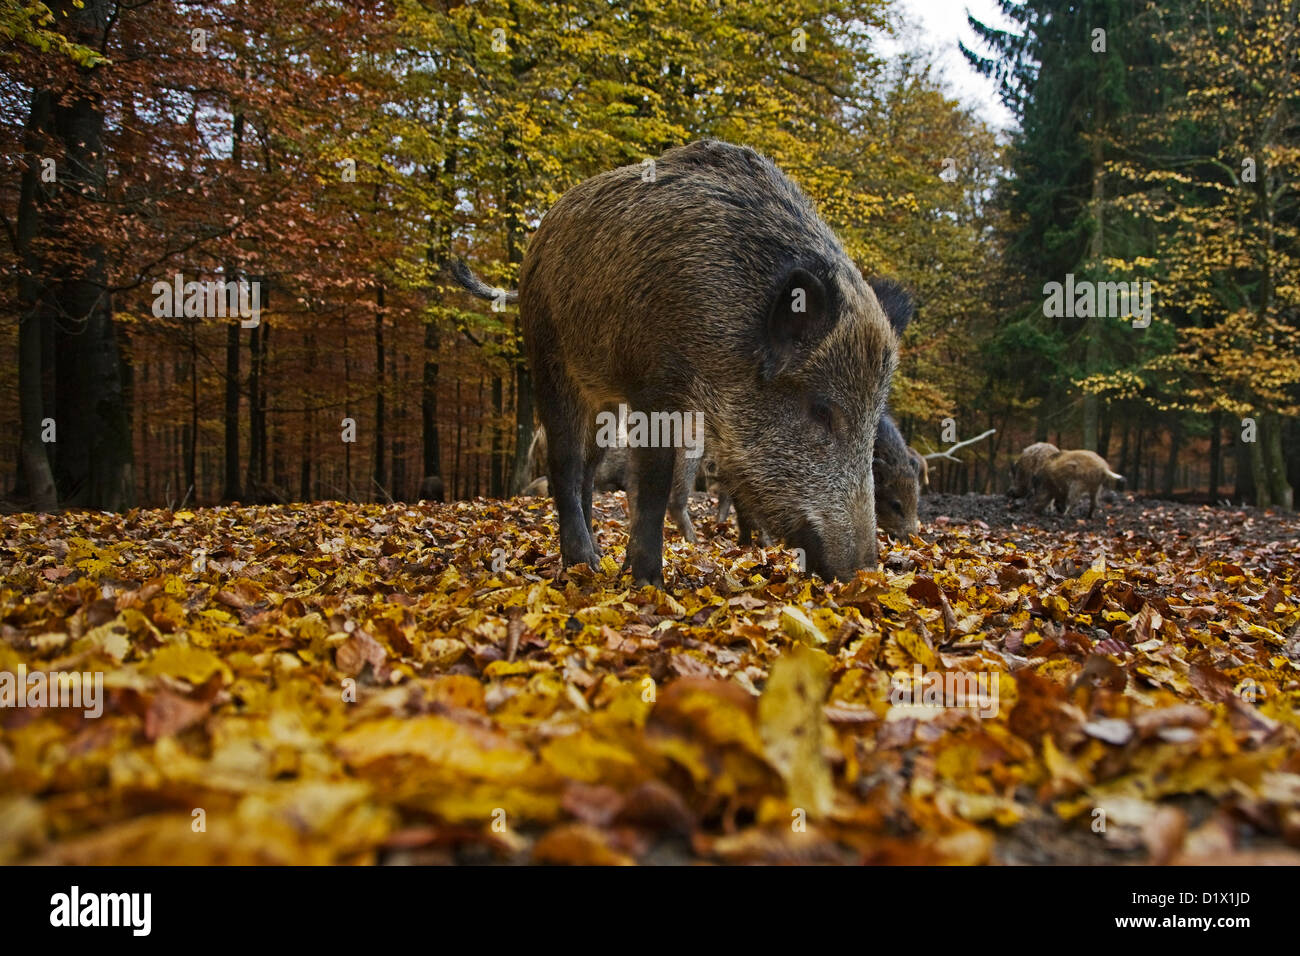 Le sanglier (Sus scrofa) anémomètre en quête de nourriture dans la litière avec son museau dans la forêt d'automne dans les Ardennes Belges, Belgique Banque D'Images